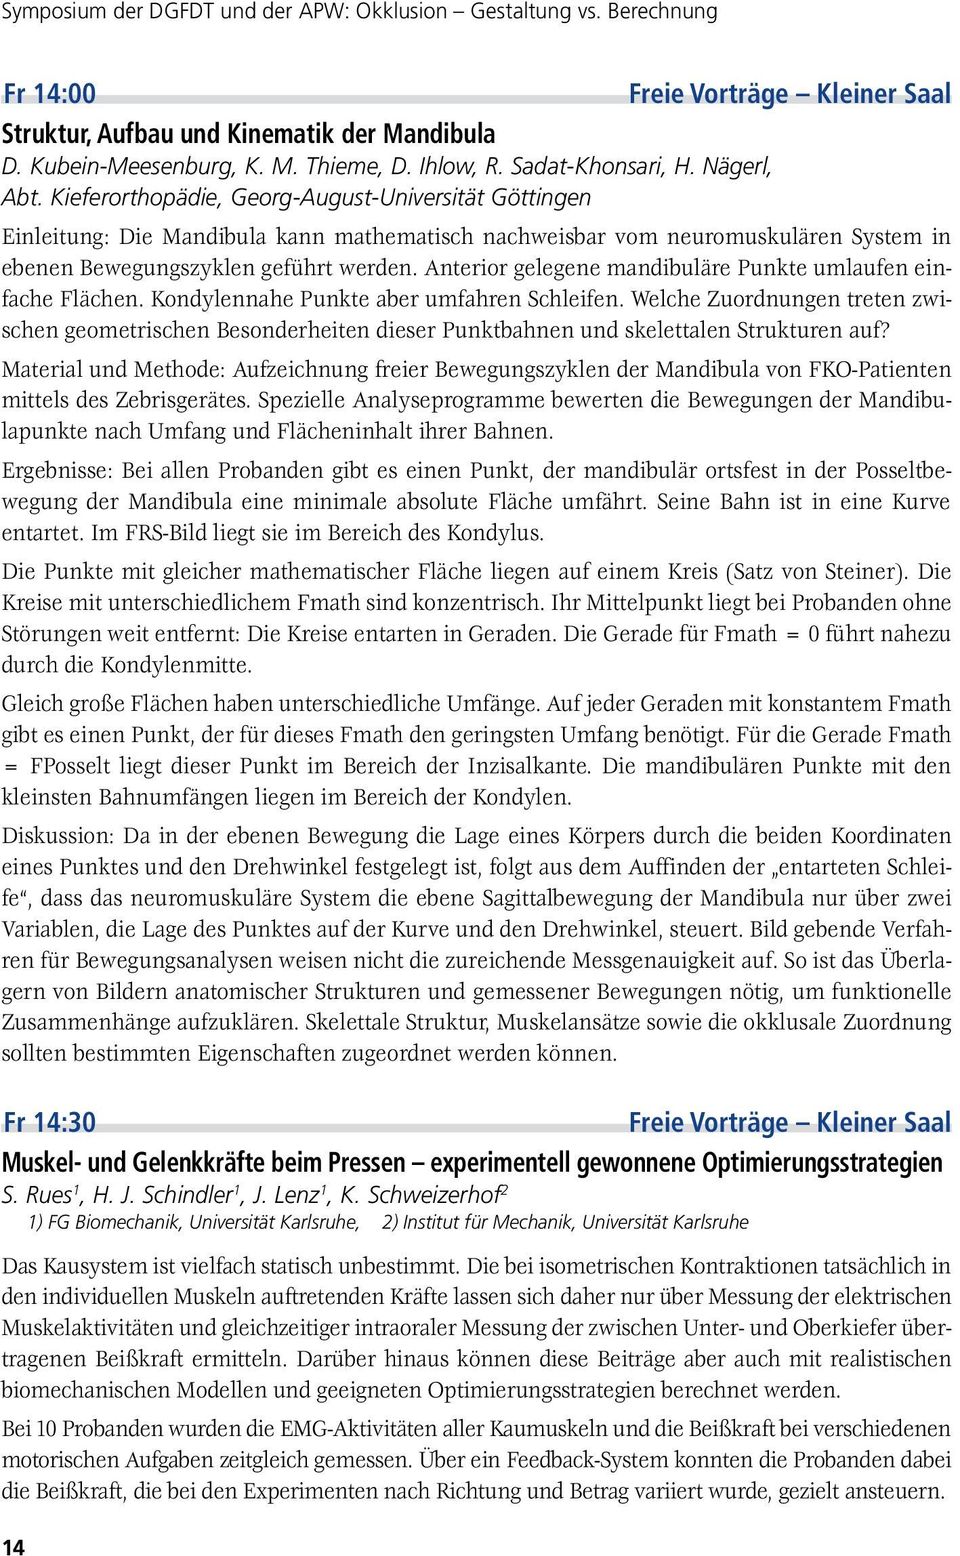 Kieferorthopädie, Georg-August-Universität Göttingen Einleitung: Die Mandibula kann mathematisch nachweisbar vom neuromuskulären System in ebenen Bewegungszyklen geführt werden.